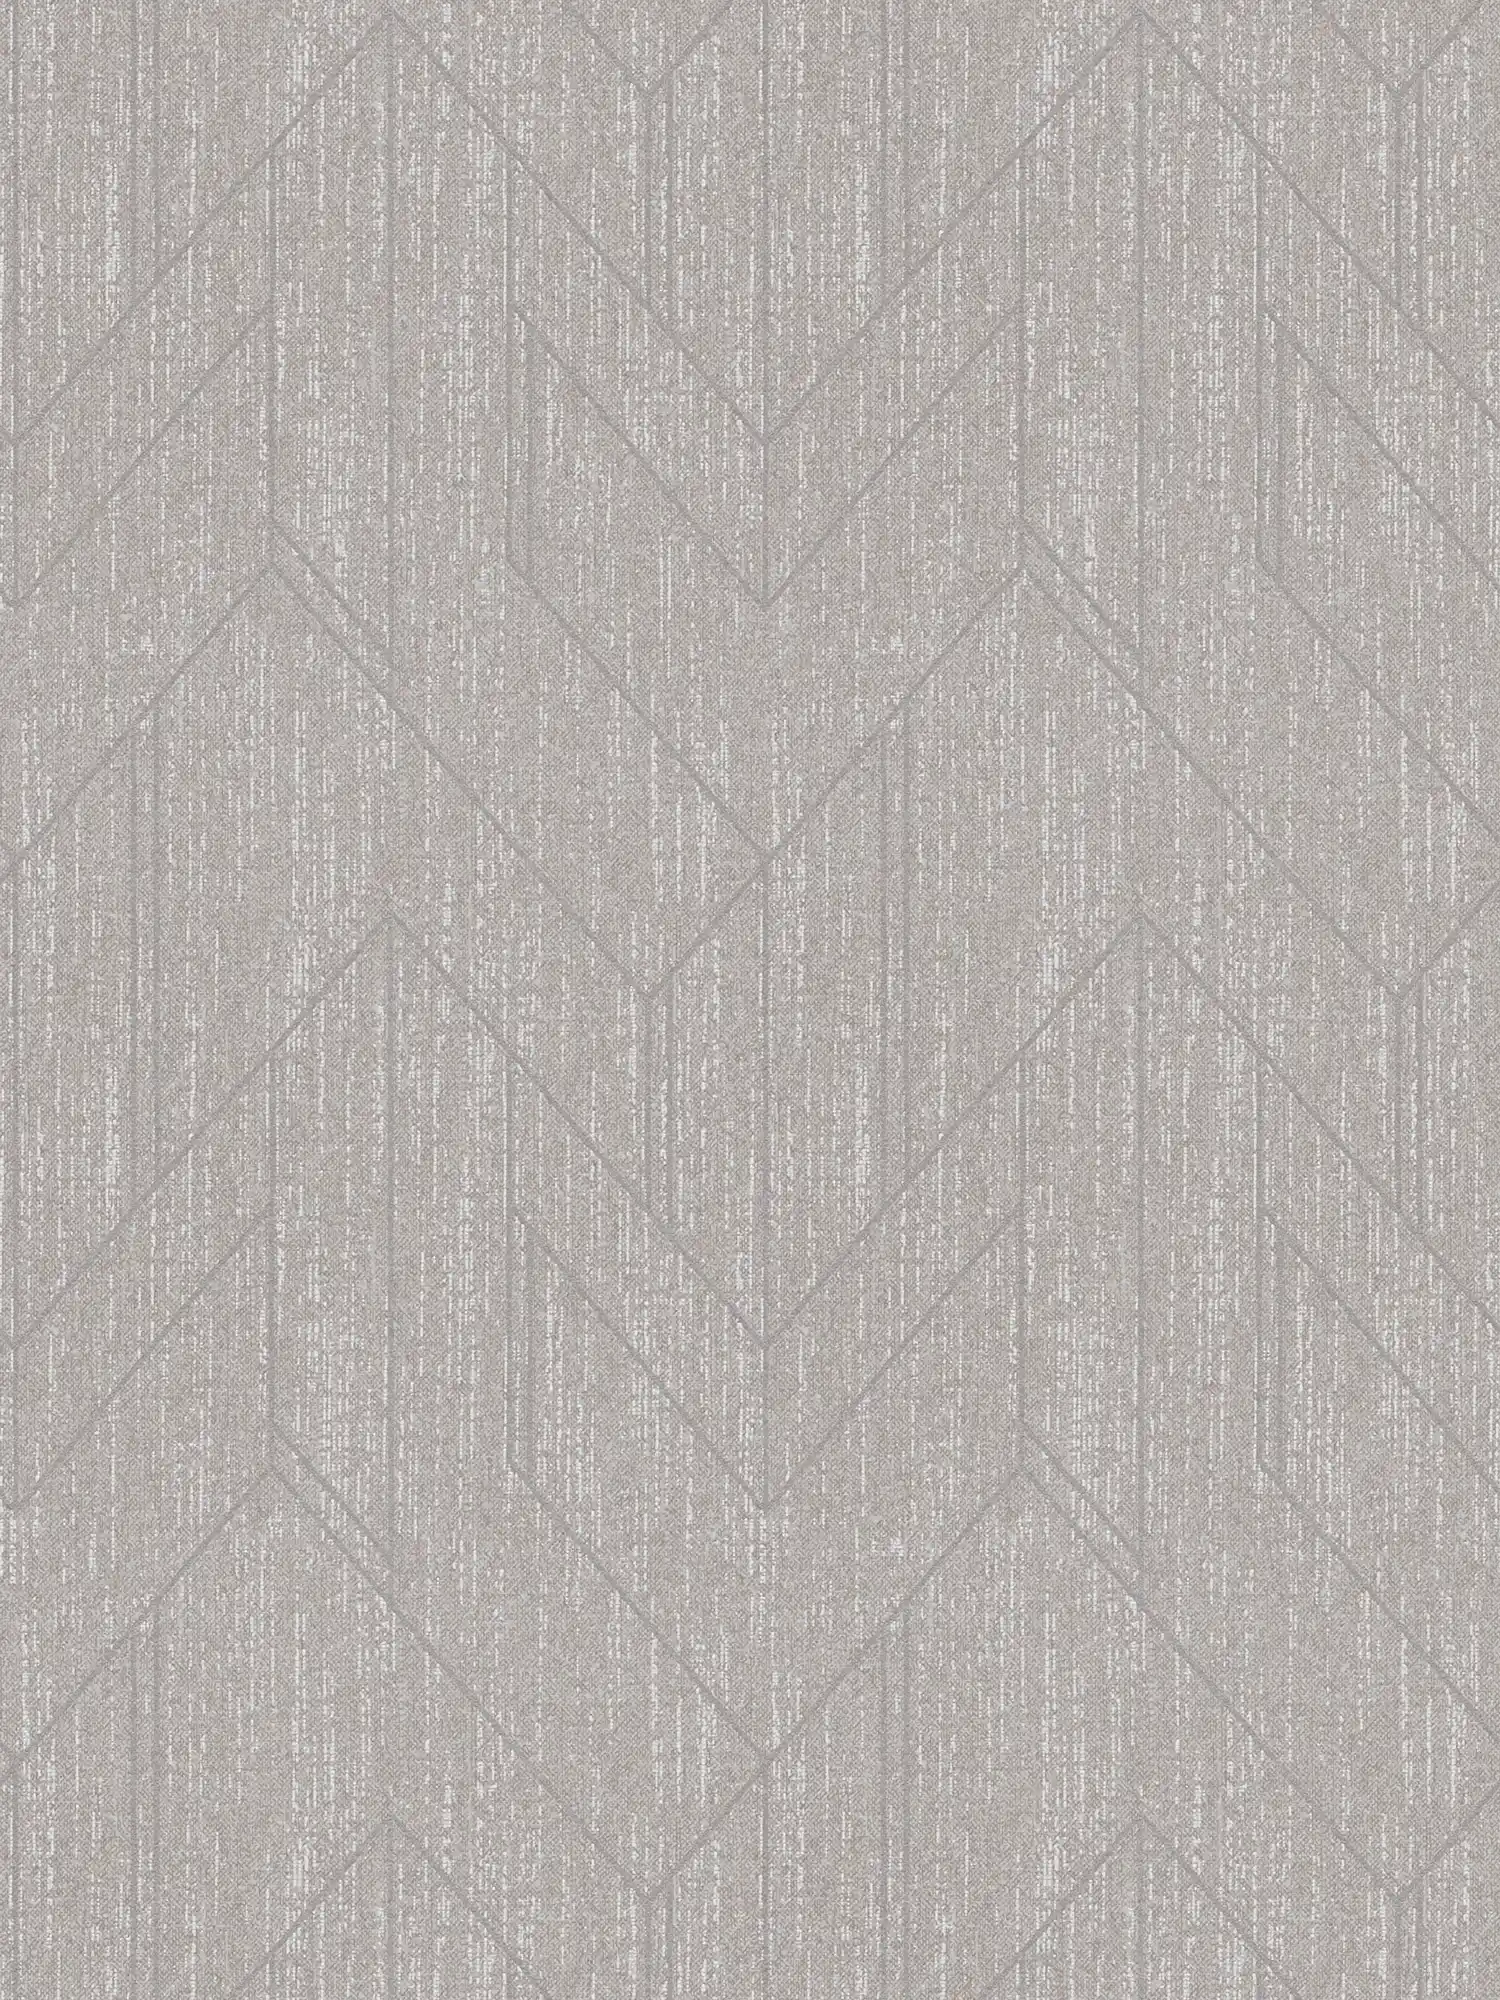 Papel pintado de aspecto textil con diseño de estructura y patrón plateado - gris
